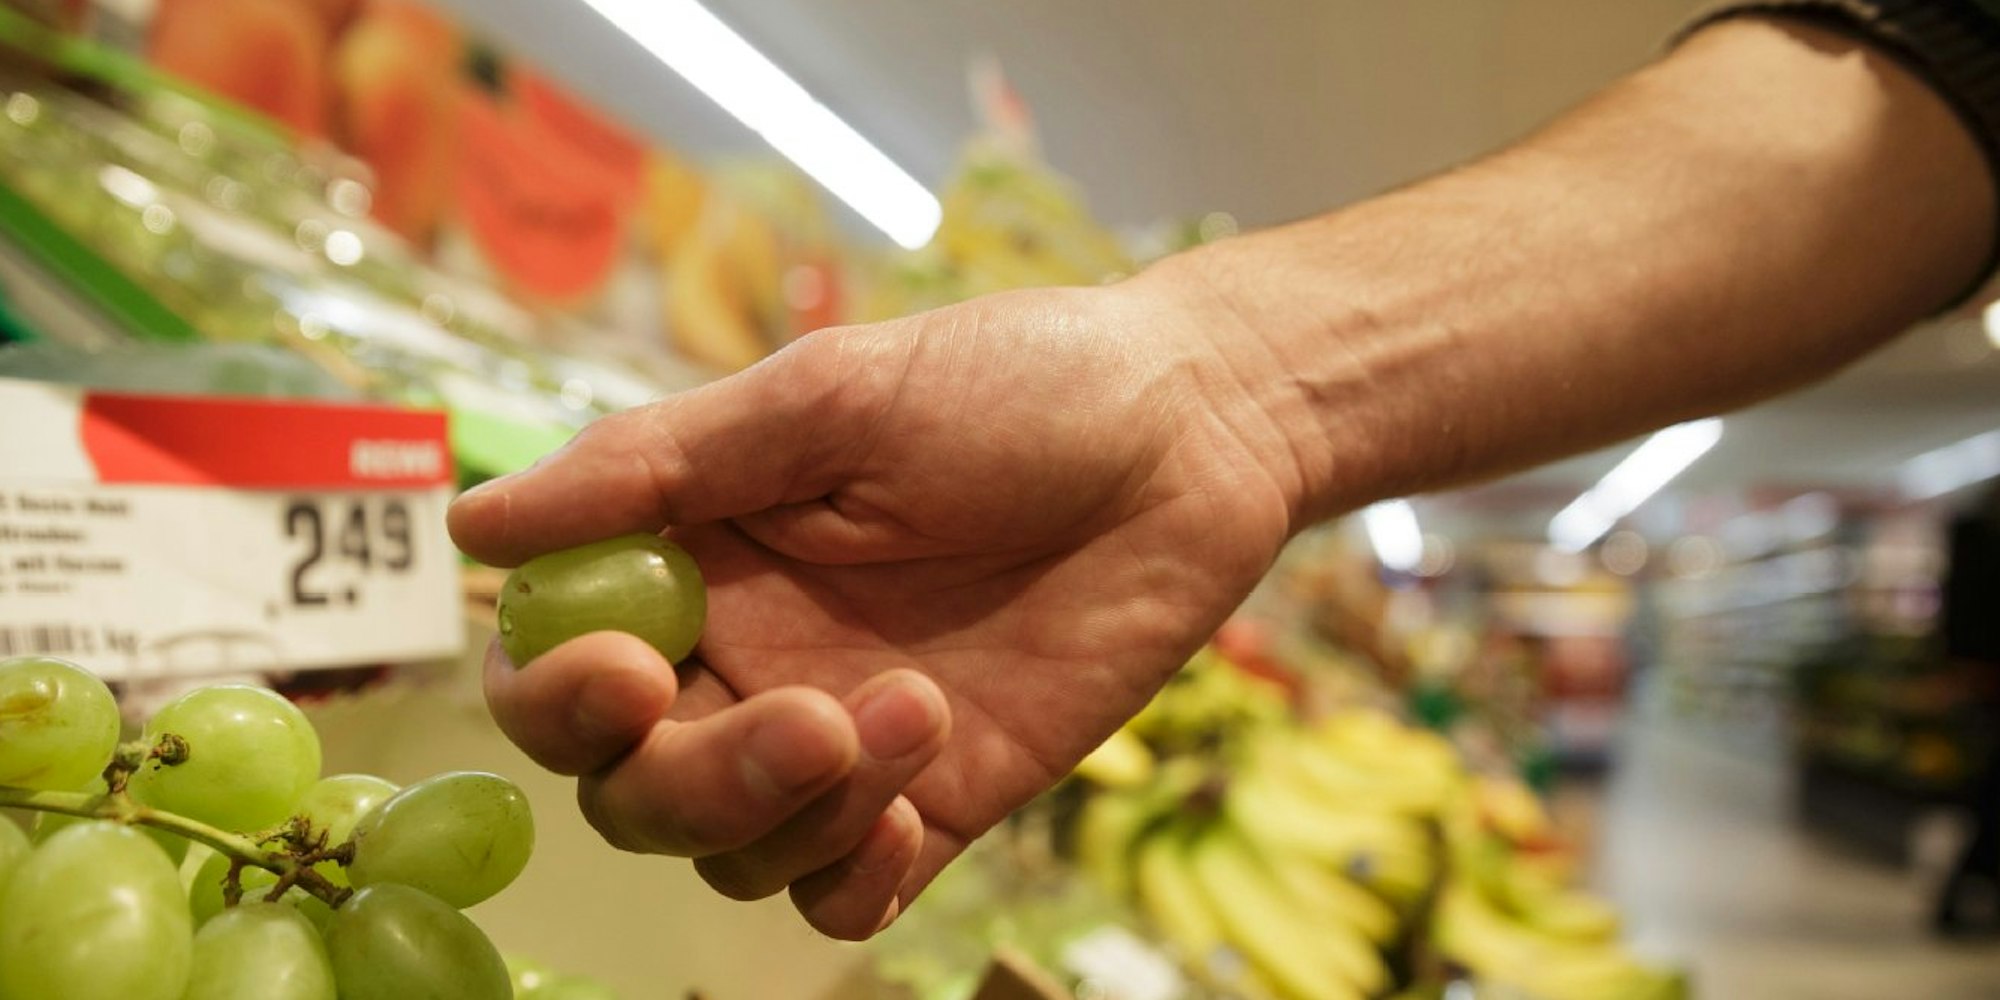 Wer Obst im Supermarkt probiert, begeht laut Gesetz einen Diebstahl.